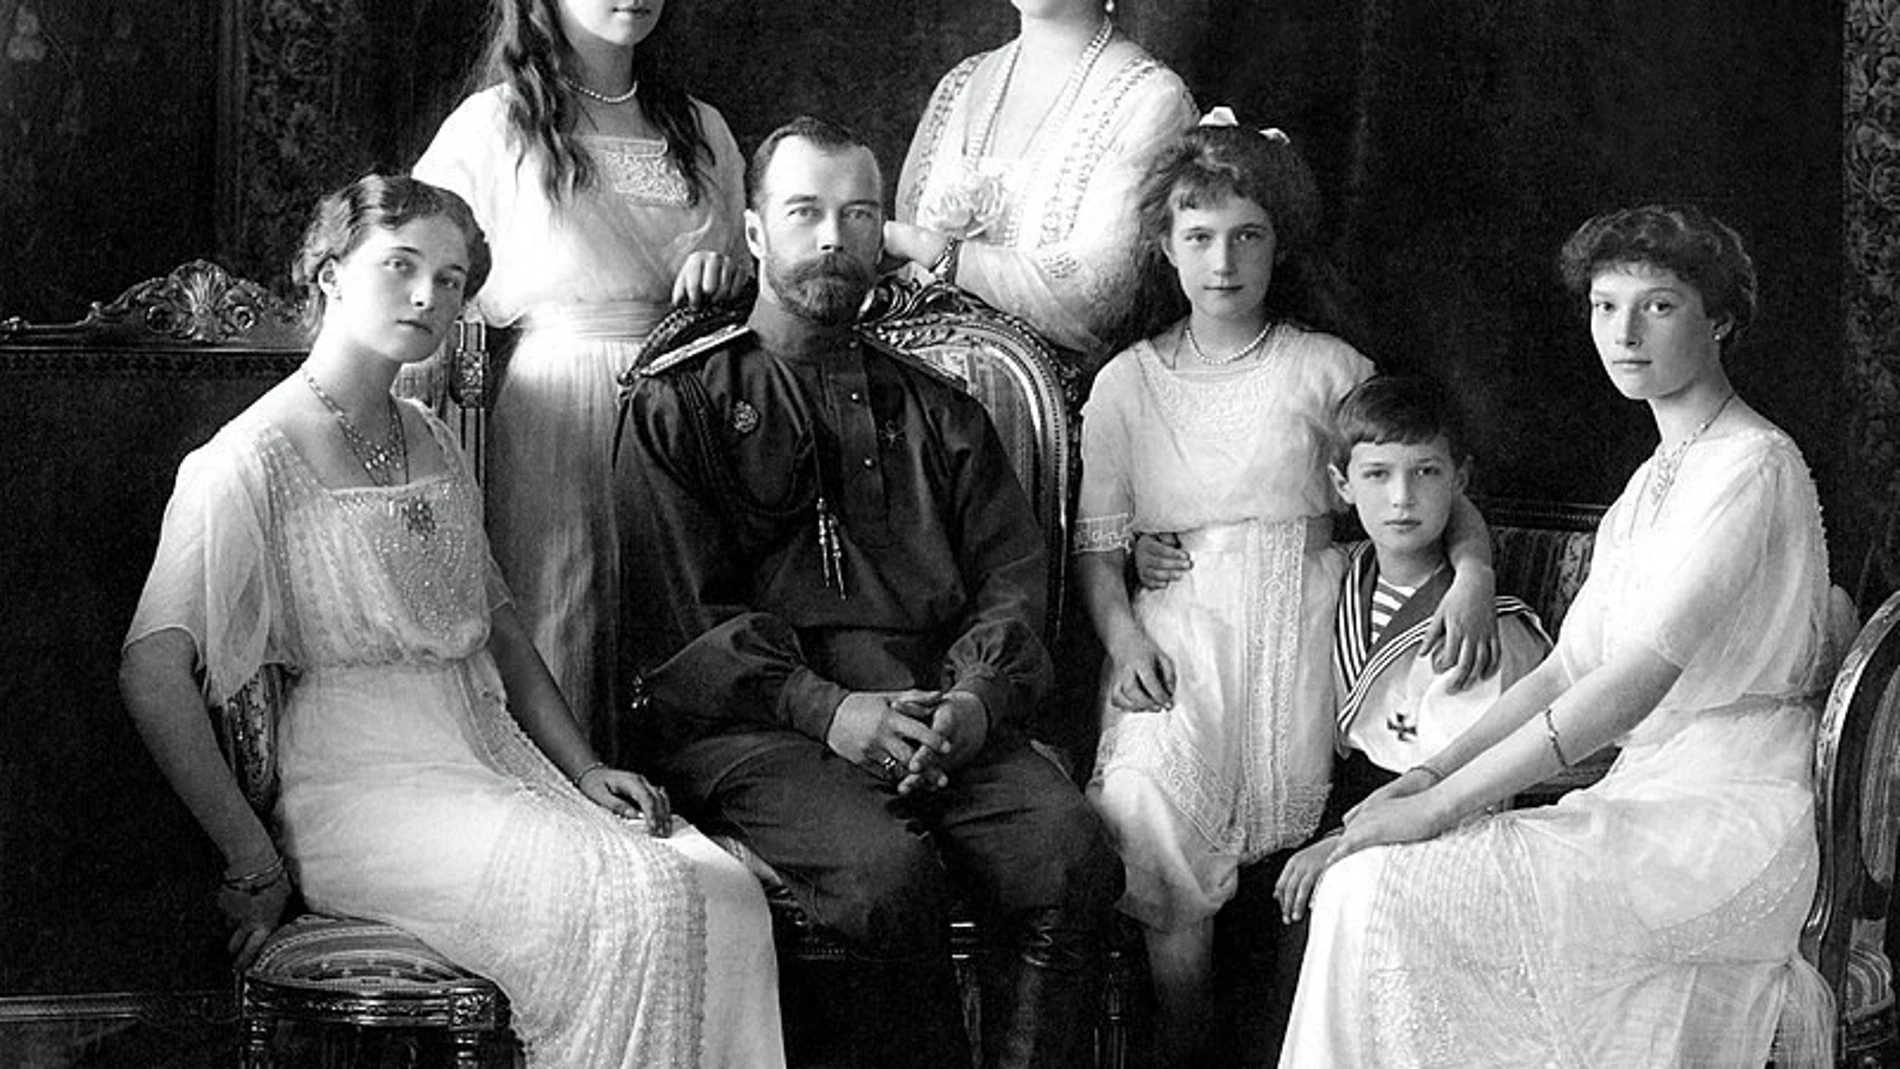 Rusia.- Rusia confirma el hallazgo de los restos de dos de los hijos del zar Nicolás II, incluido el príncipe heredero